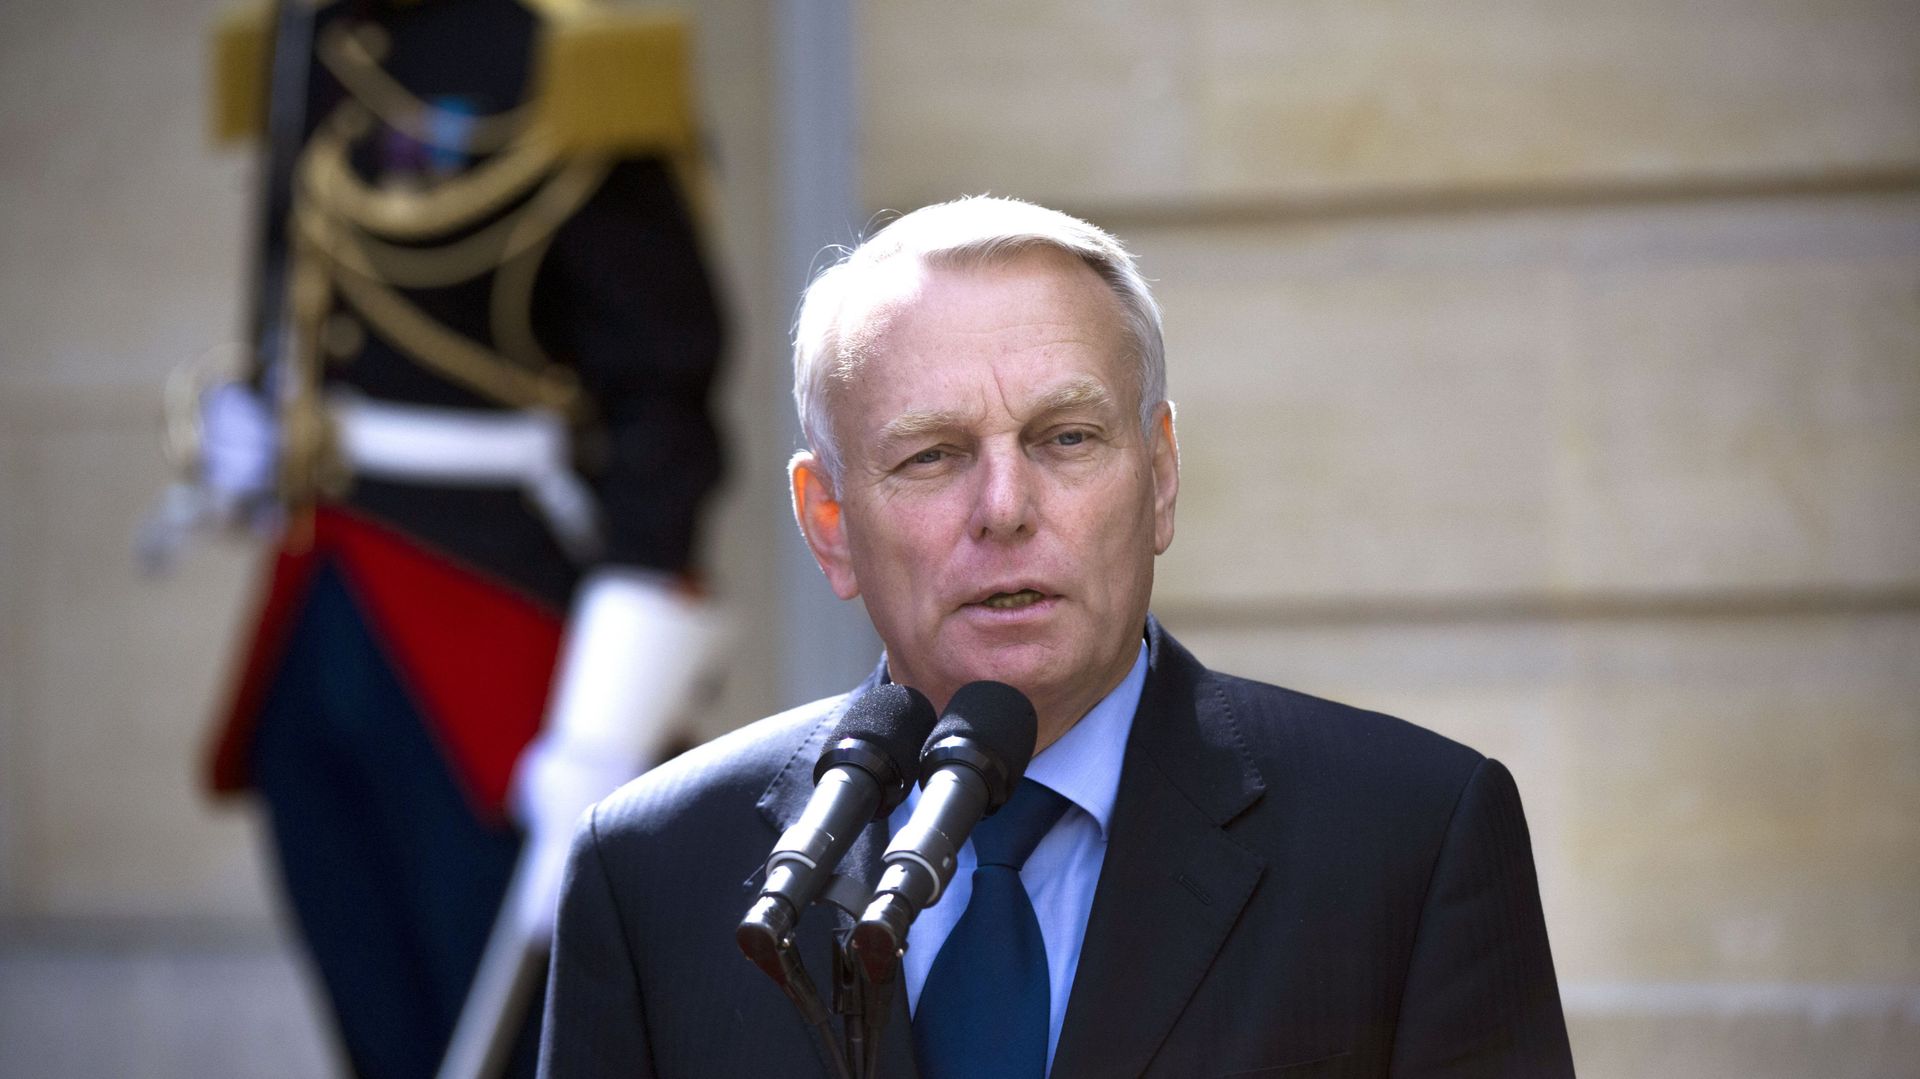 Le nouveau Premier ministre français, Jean-Marc Ayrault, met la dernière main à son gouvernement